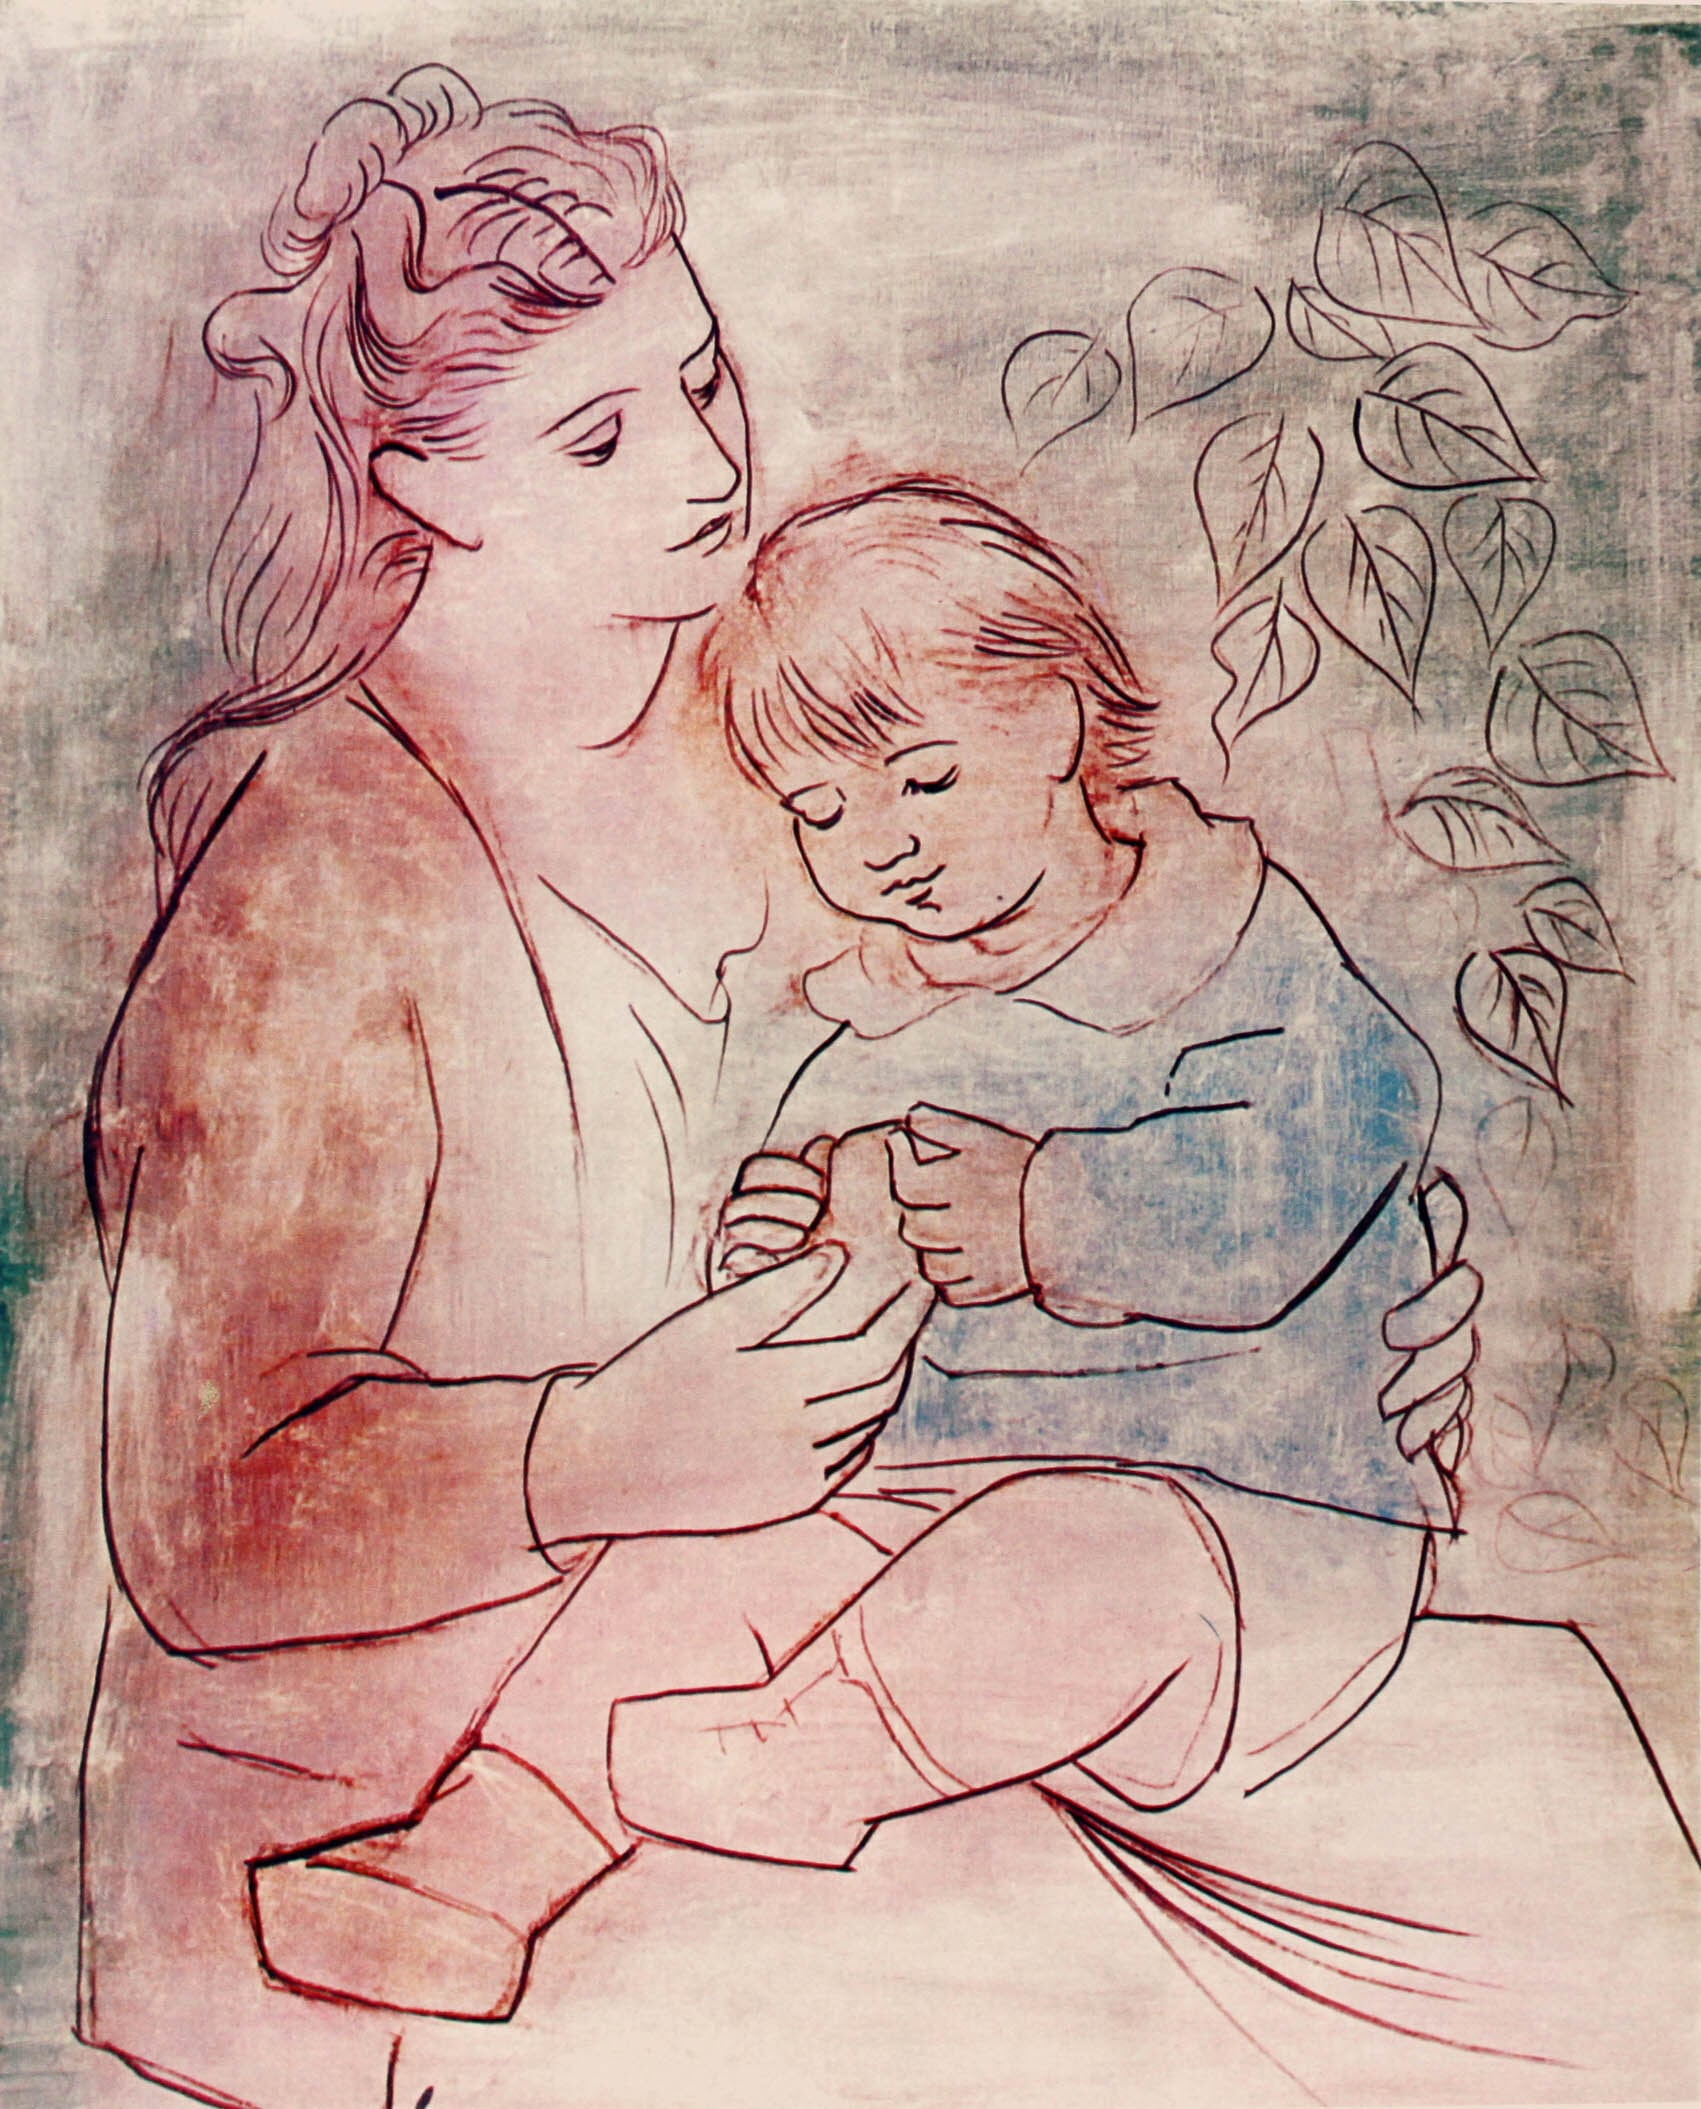 パブロ・ピカソ「母と子」作品証明書・展示用フック・限定500部